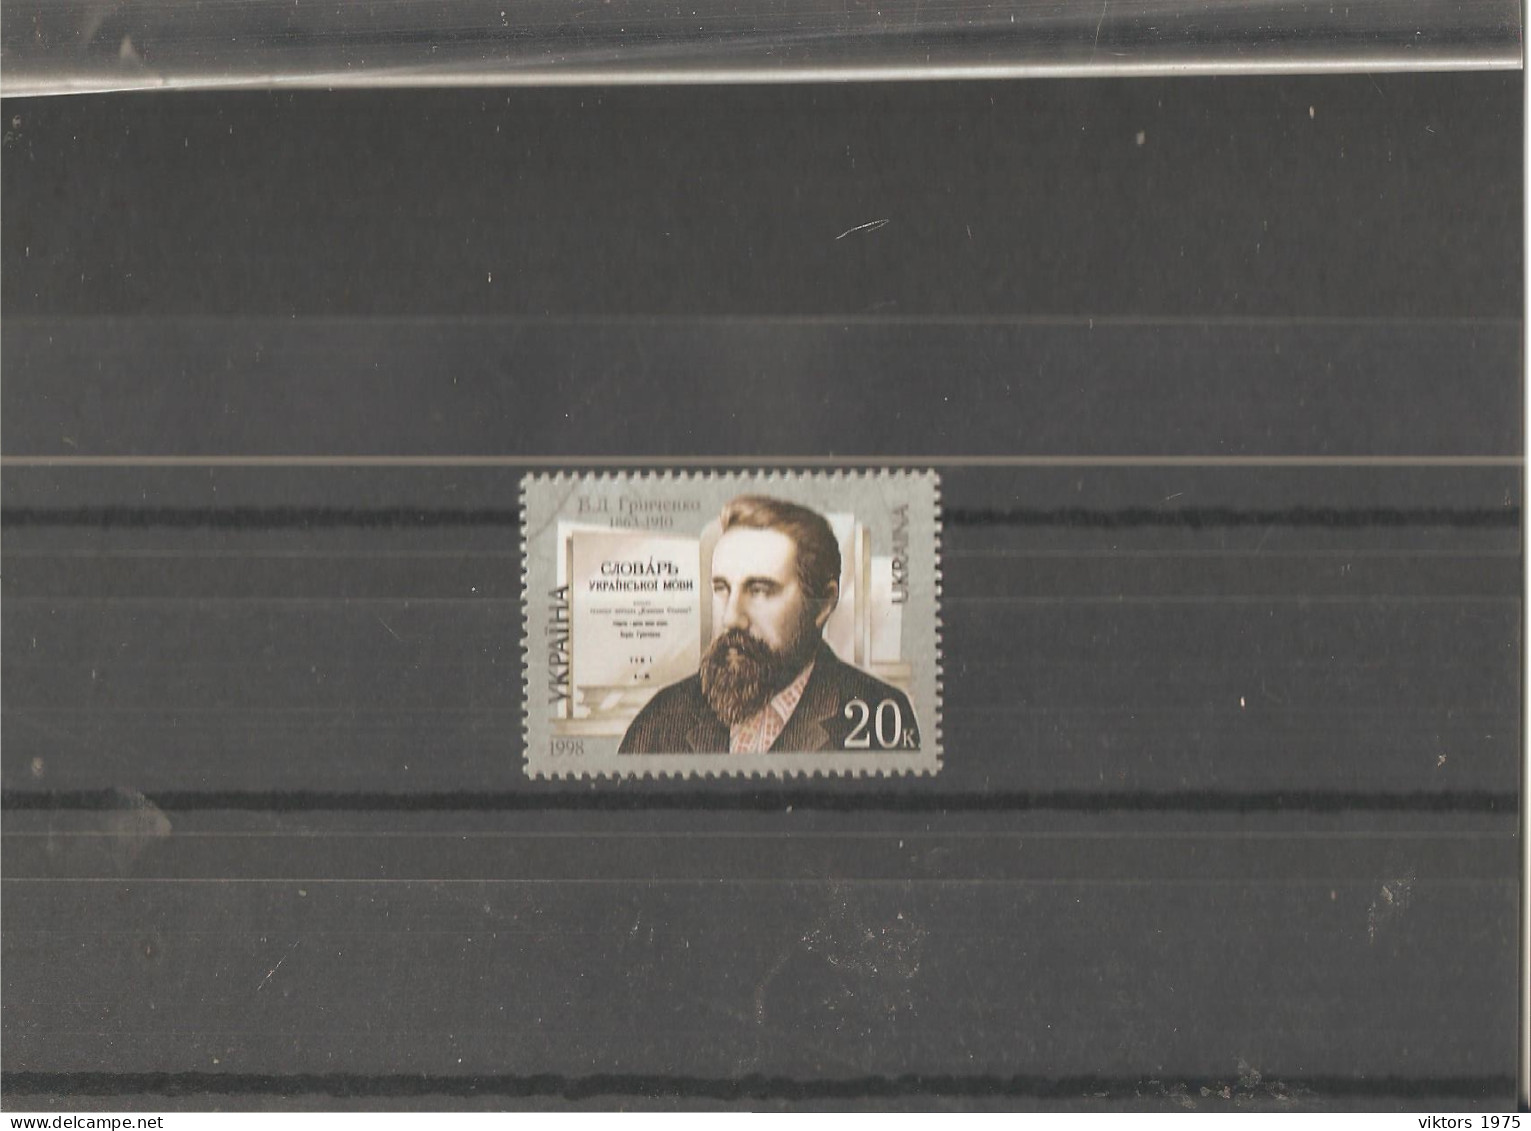 MNH Stamp Nr.289 In MICHEL Catalog - Ukraine